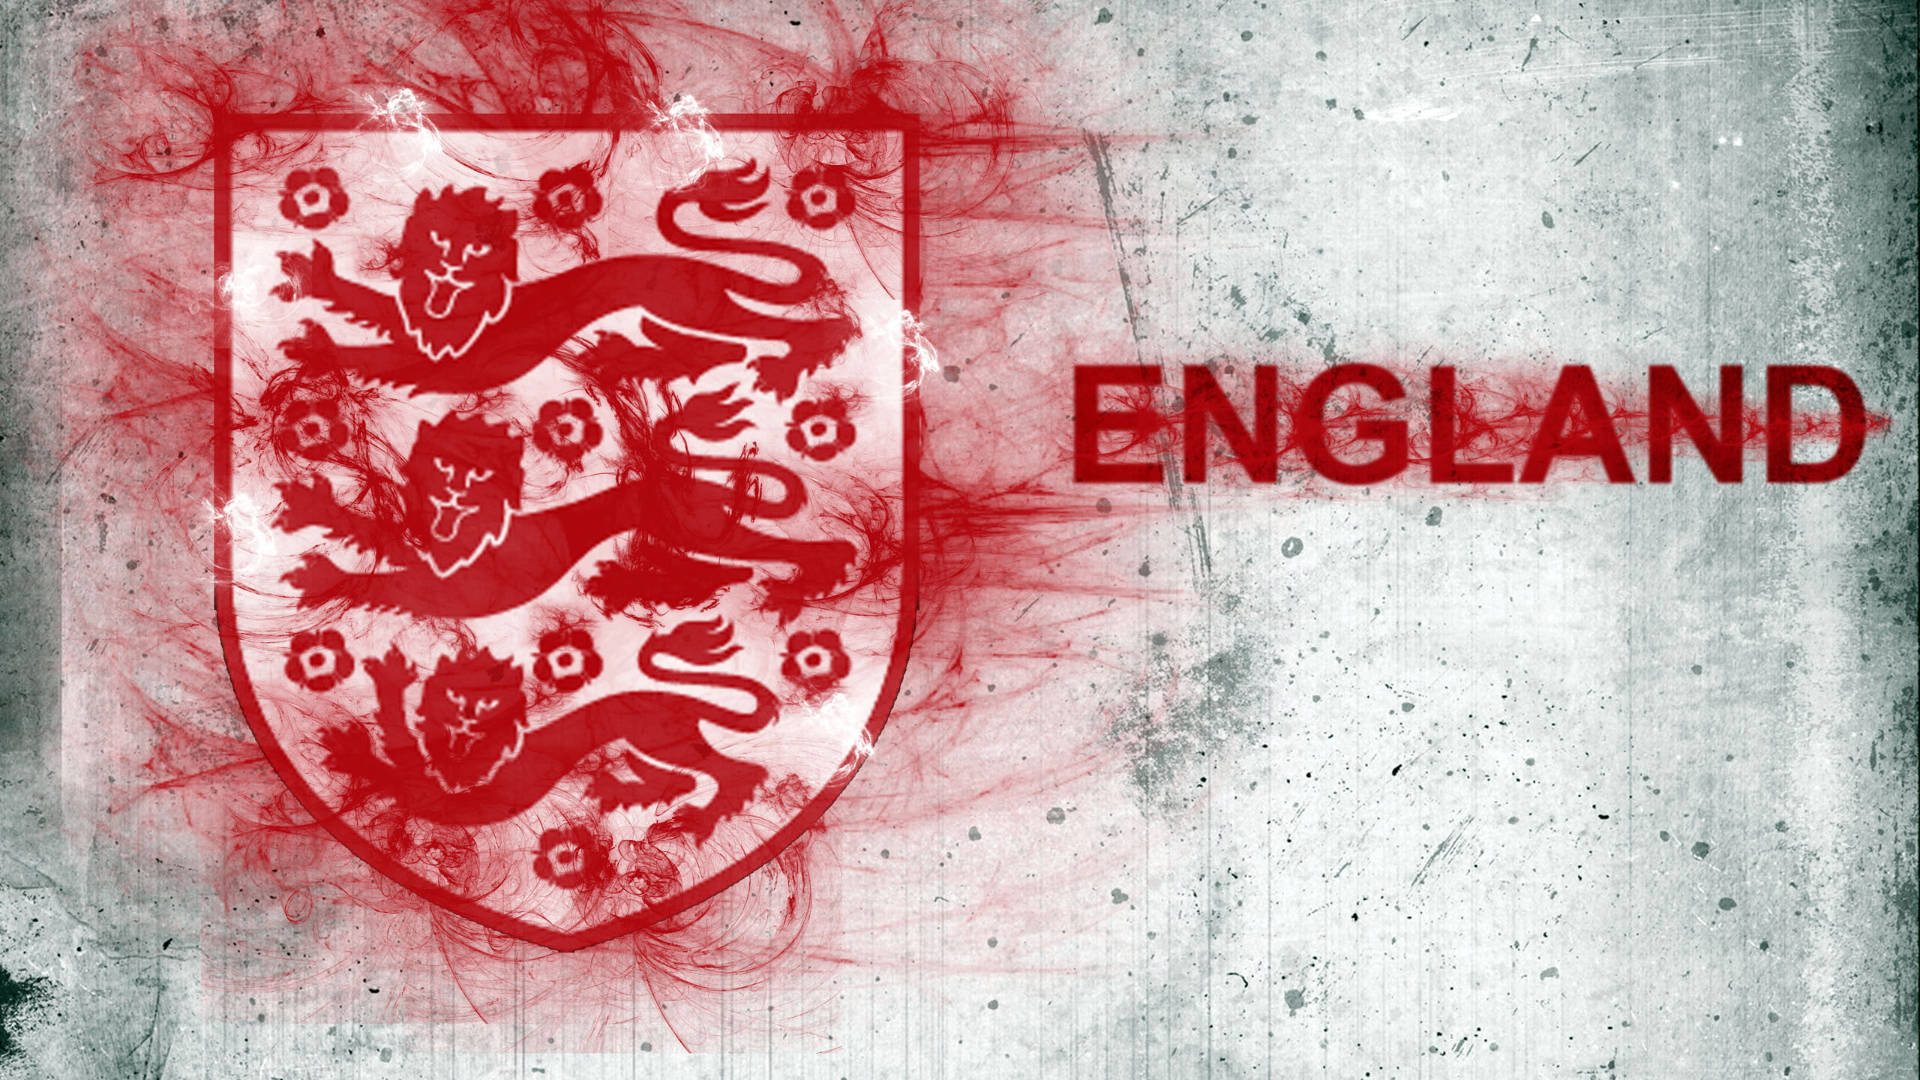 England Football Wall Graffitied Crest